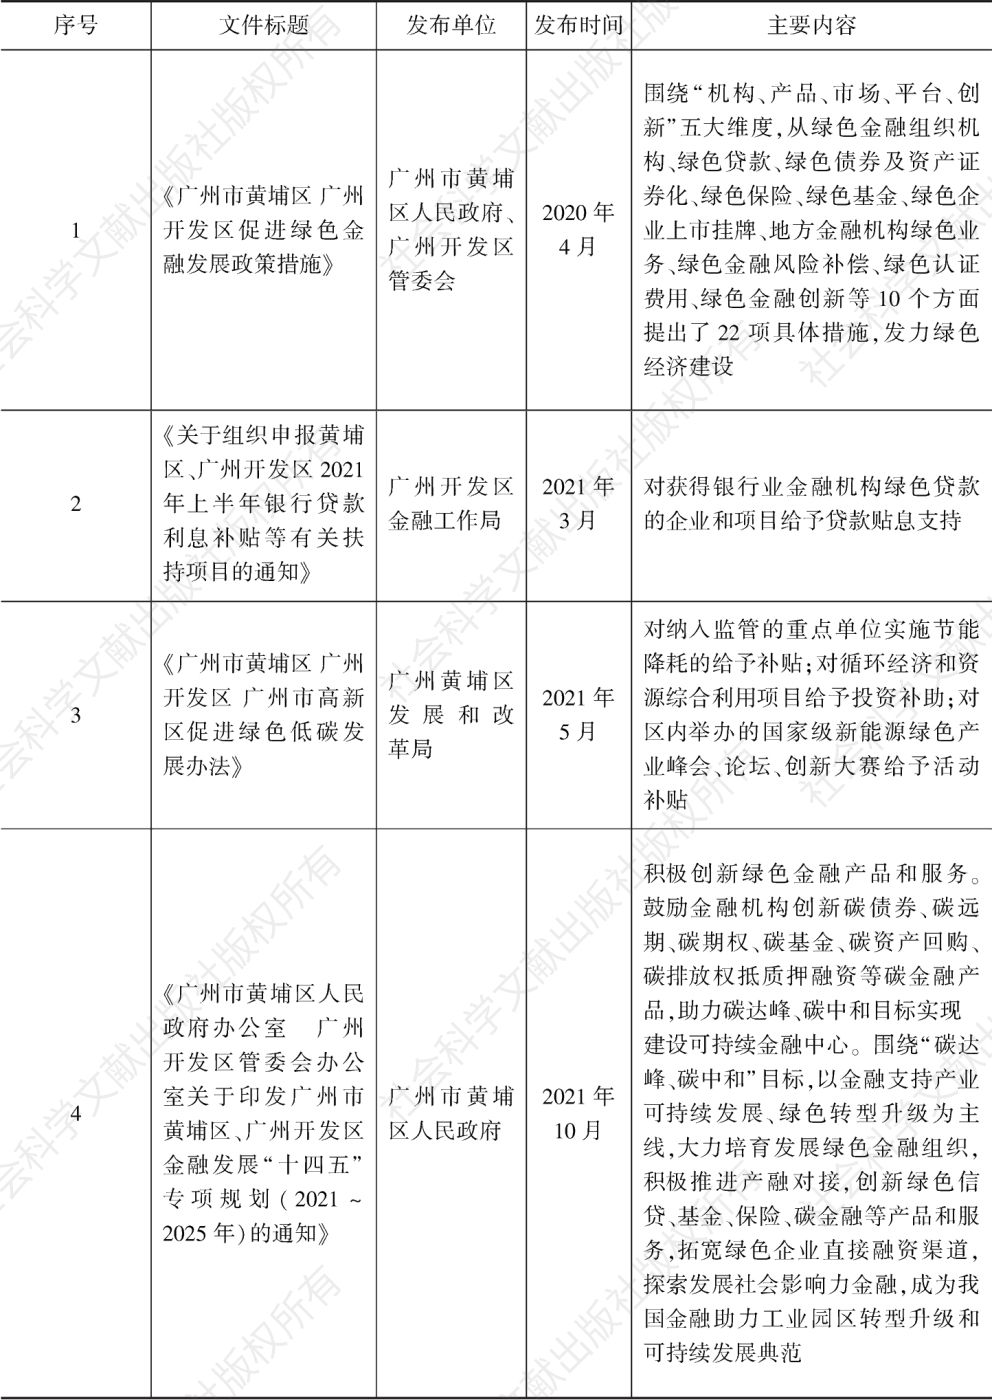 表1 近年来广州市黄埔区、广州开发区绿色金融政策